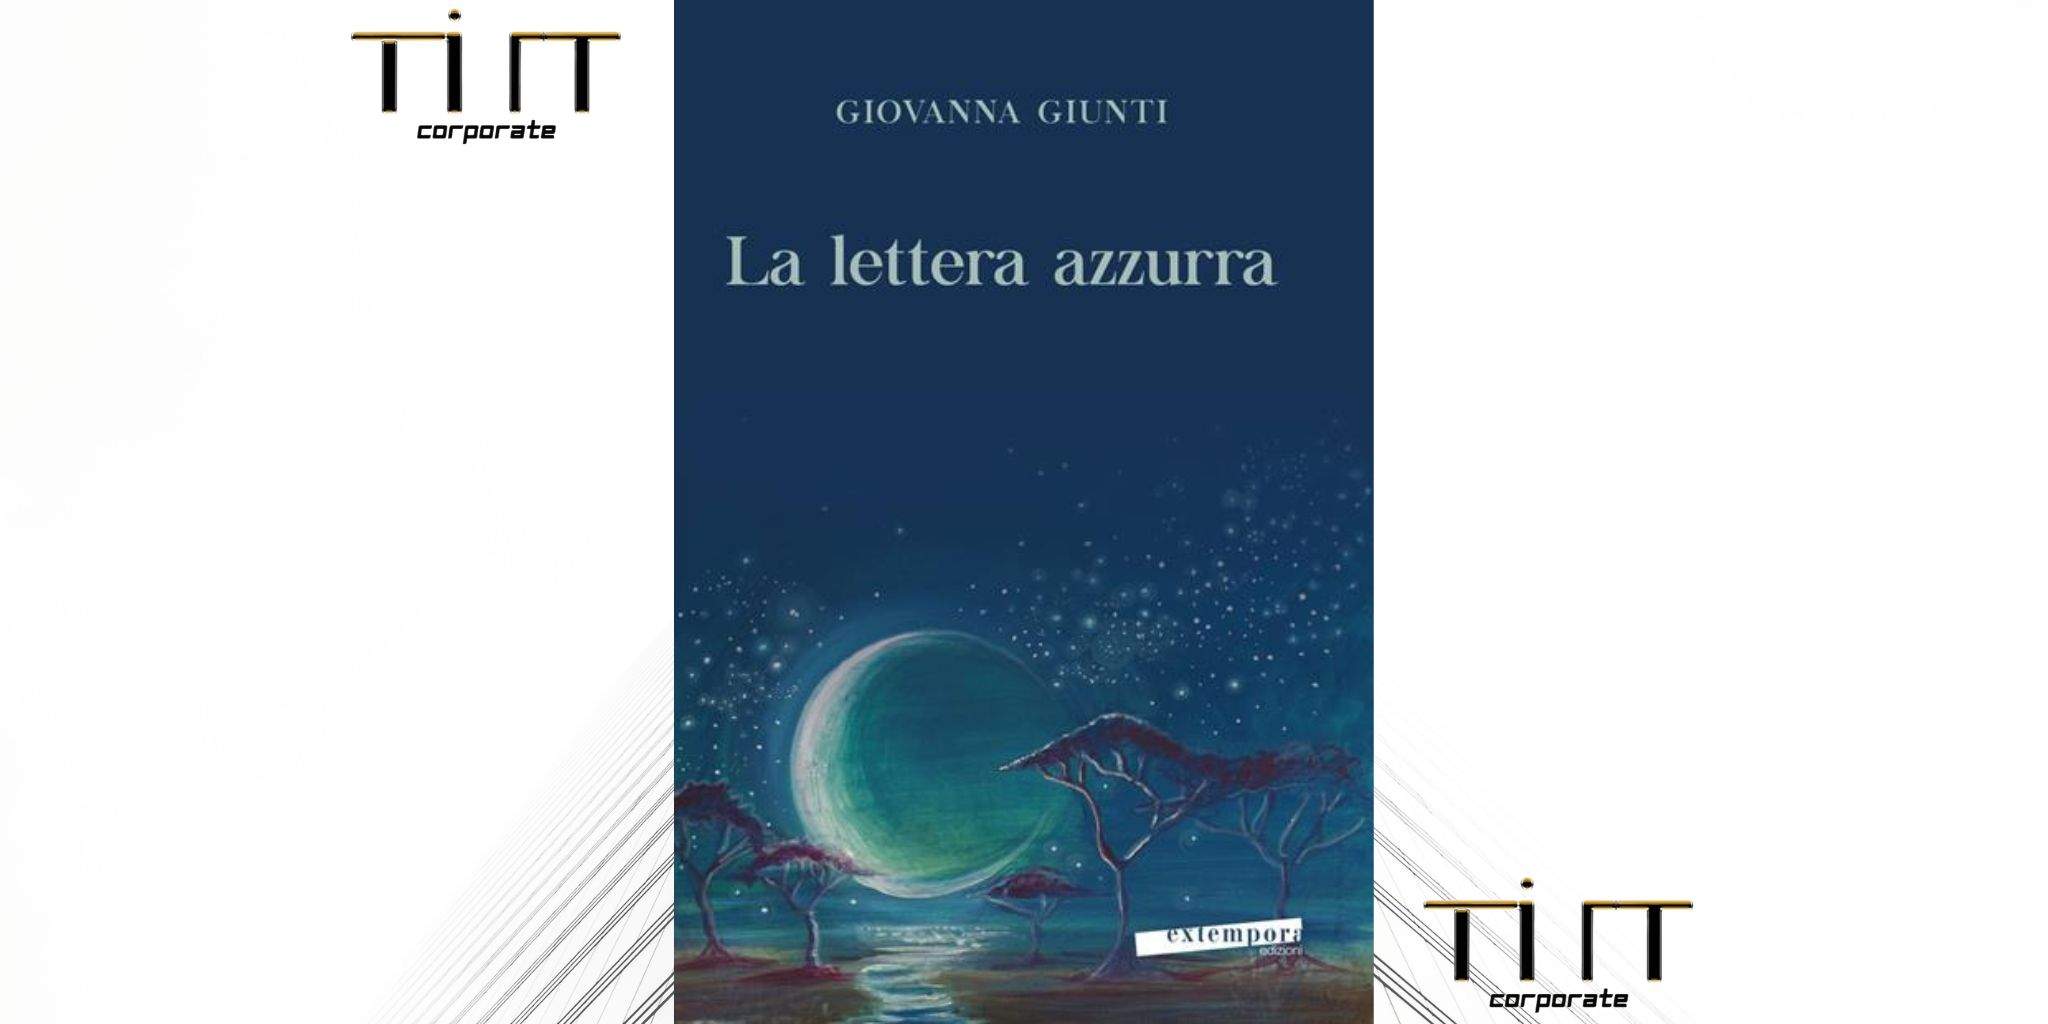 Tilt Corporate acquisice i diritti cinematogeafici del romanzo "La lettera azzurra" di Giovanna Giunti